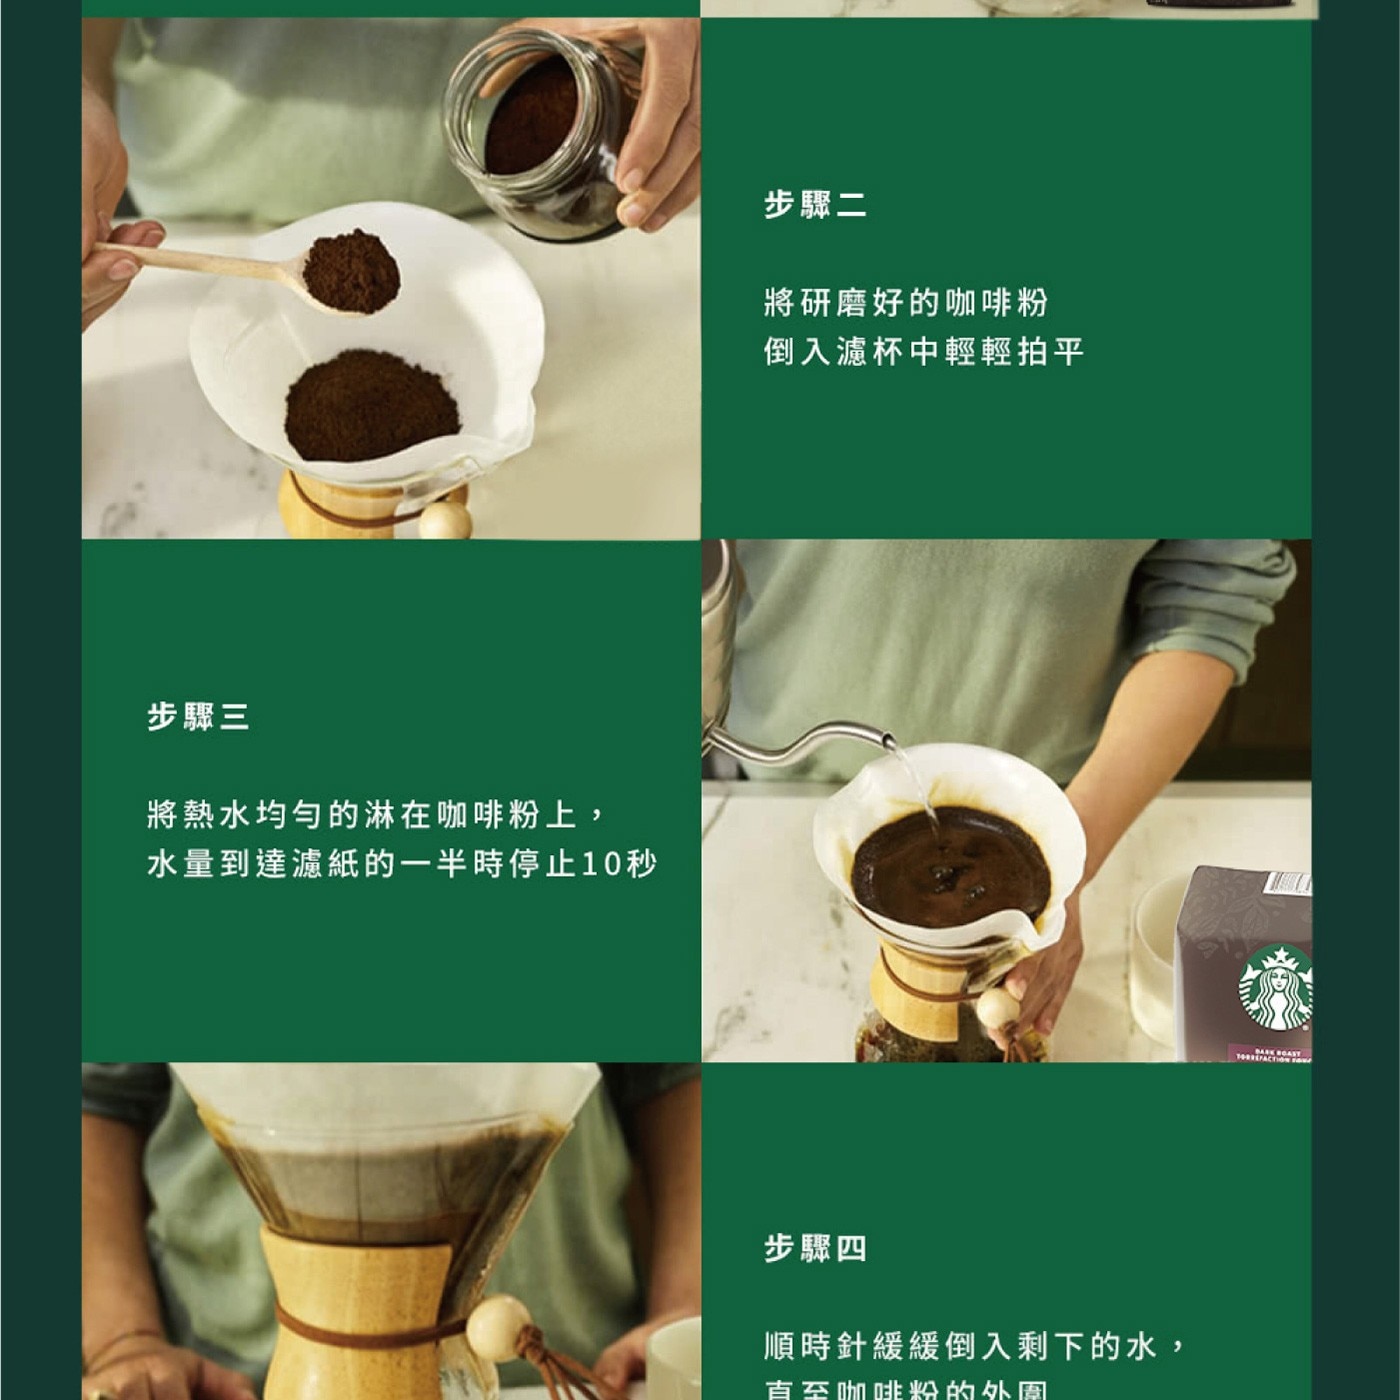 星巴克 佛羅娜綜合咖啡豆 沖泡方法